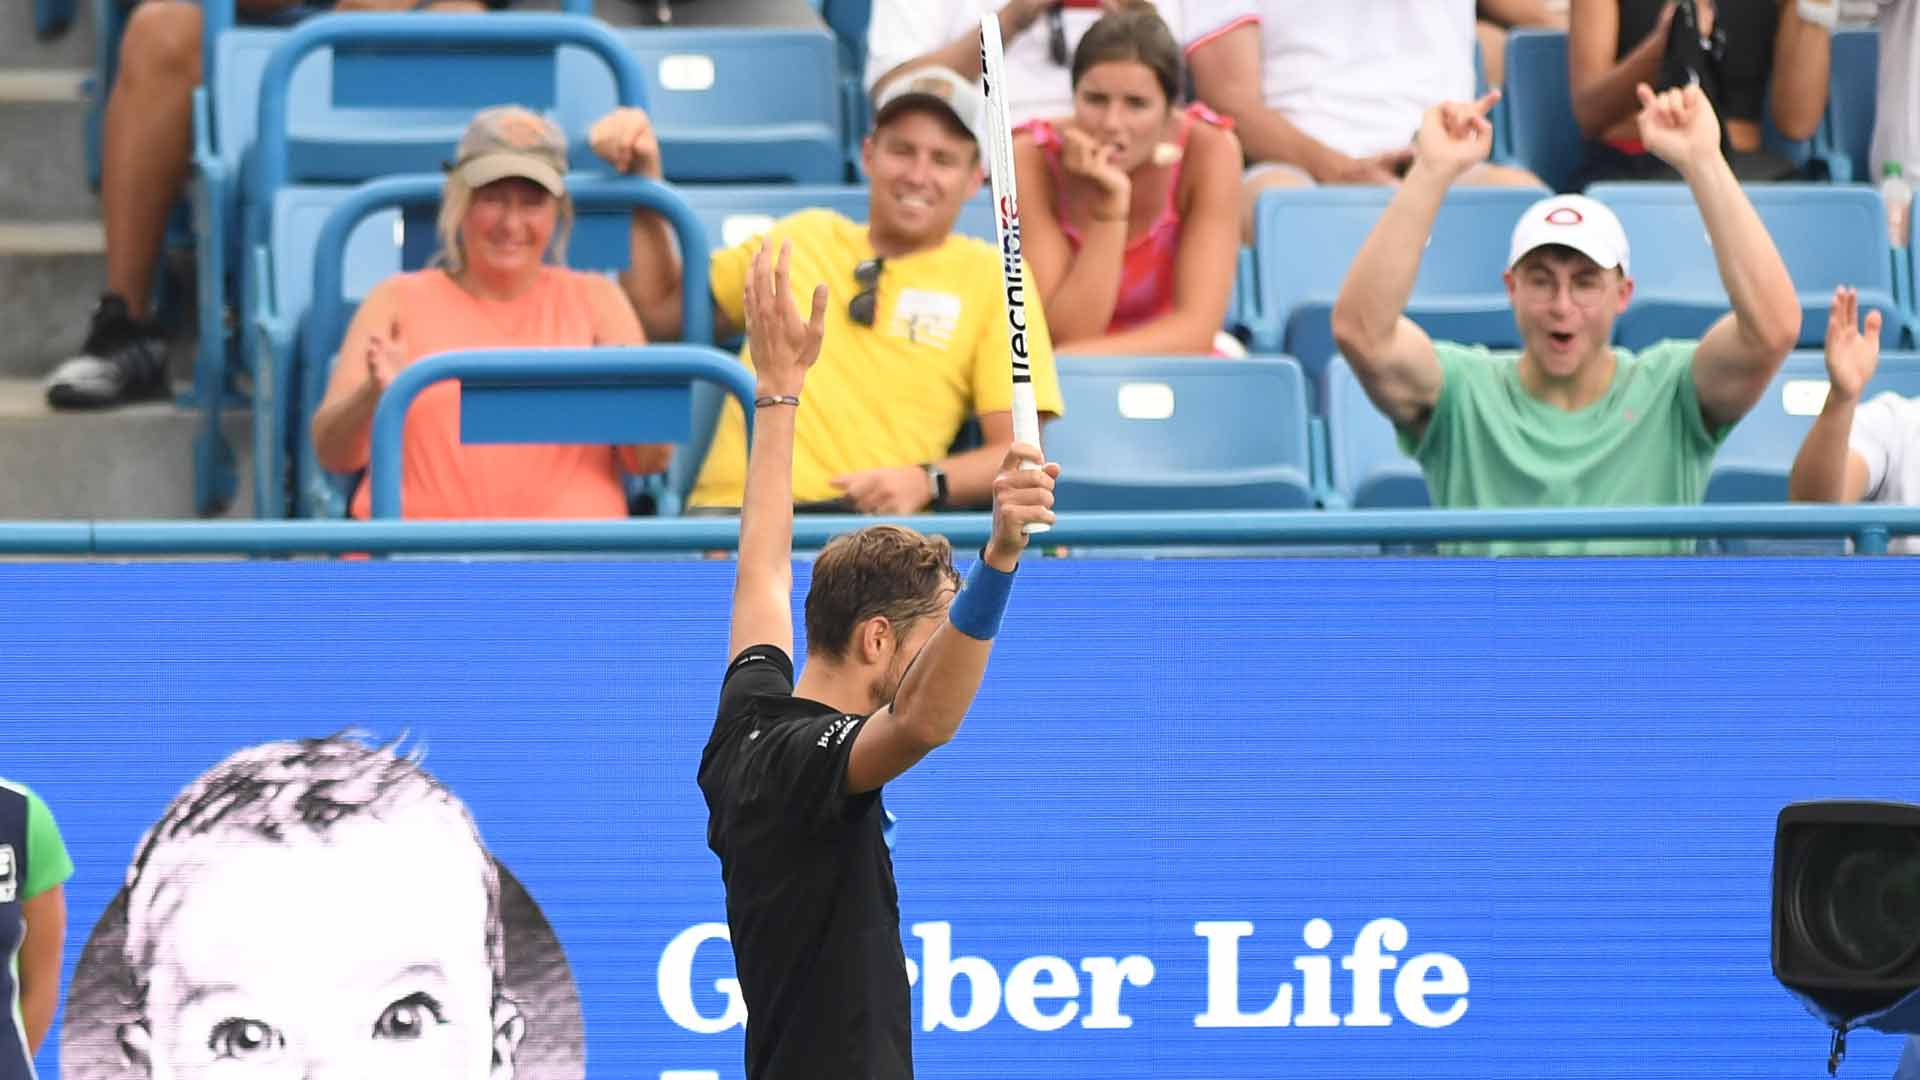 Medvedevs Defense Brings Fritz To Breaking Point In Cincinnati ATP Tour Tennis